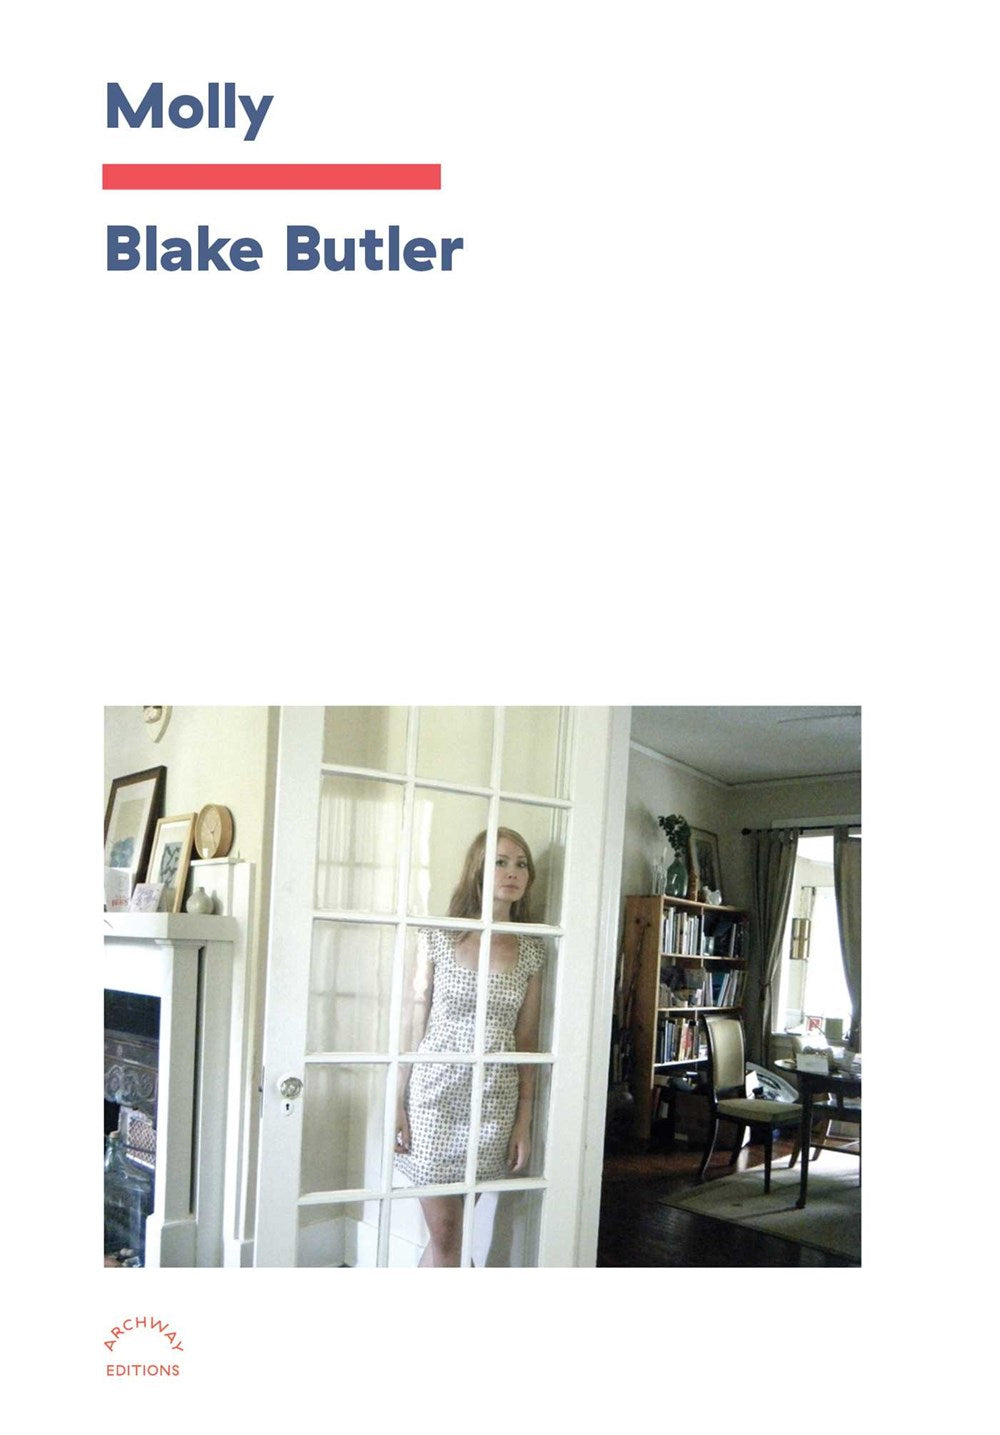 Molly: A Memoir by Blake Butler (12/5/23)